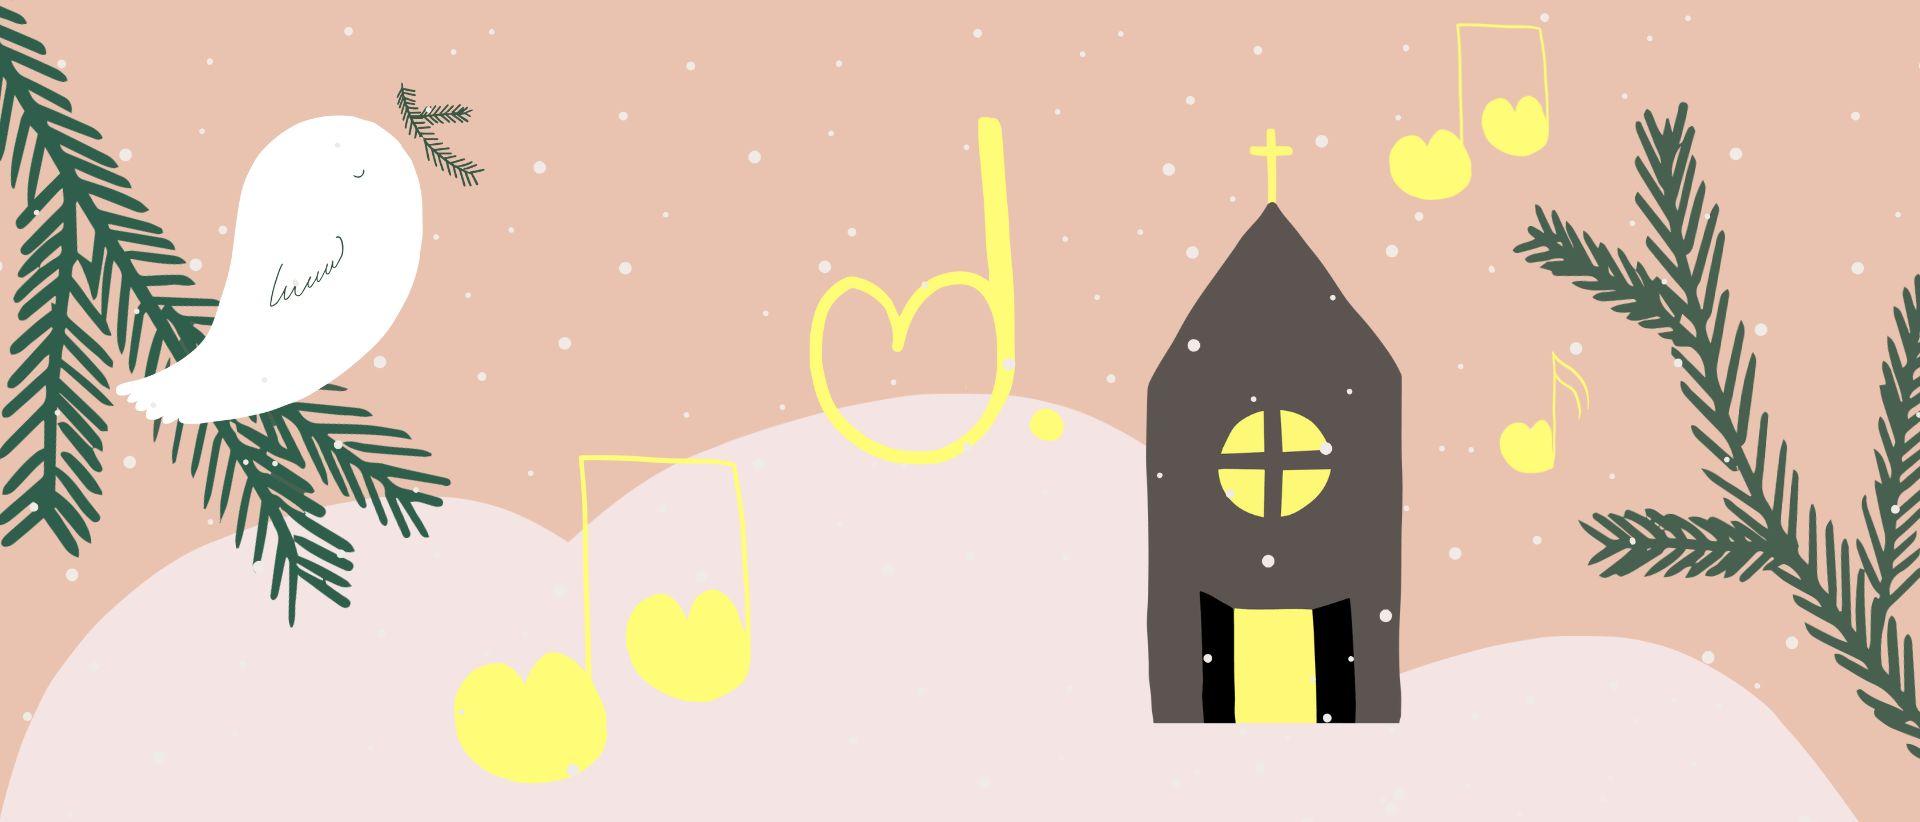 Piirroskuvia: luminen maisema, kuusenoksia, yhdessä kyyhky, kirkko jossa valot, keltaisia nuotteja ilmassa.